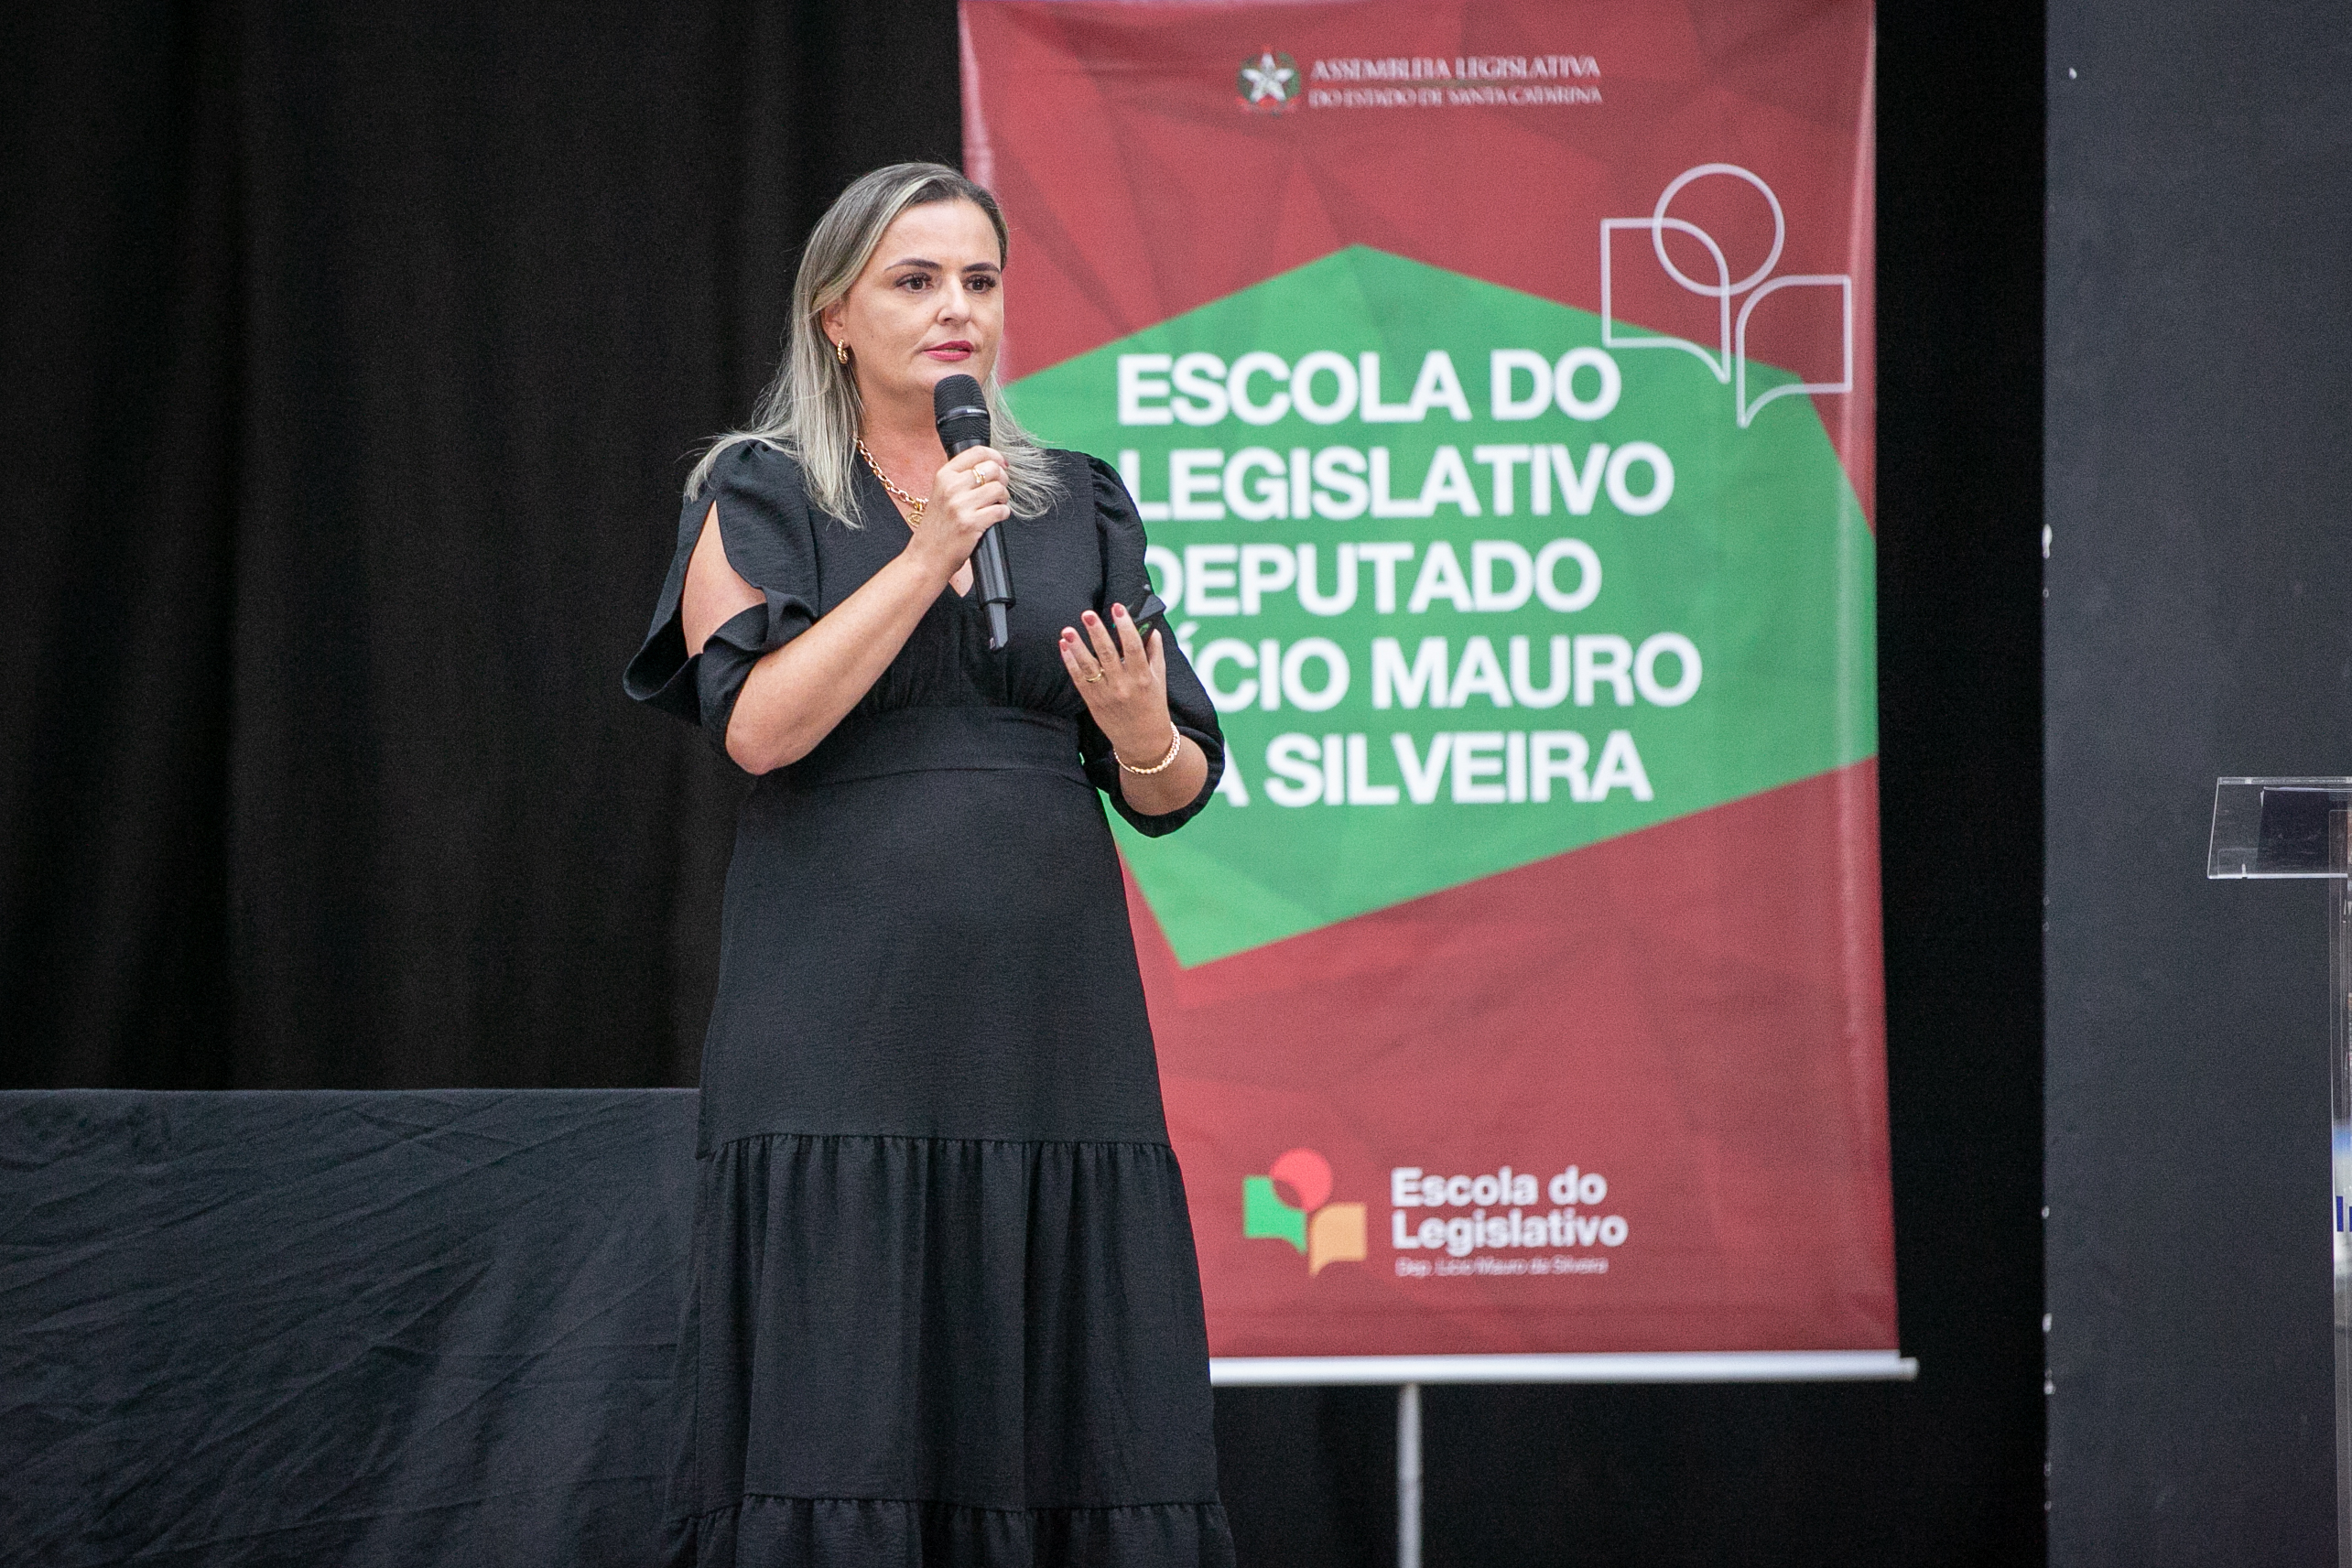 1 mulher loira com vestido longo preto fala ao microfone, ao fundo banner escrito Escola do legislativo Deputado Lúcio Mauro da Silveira.